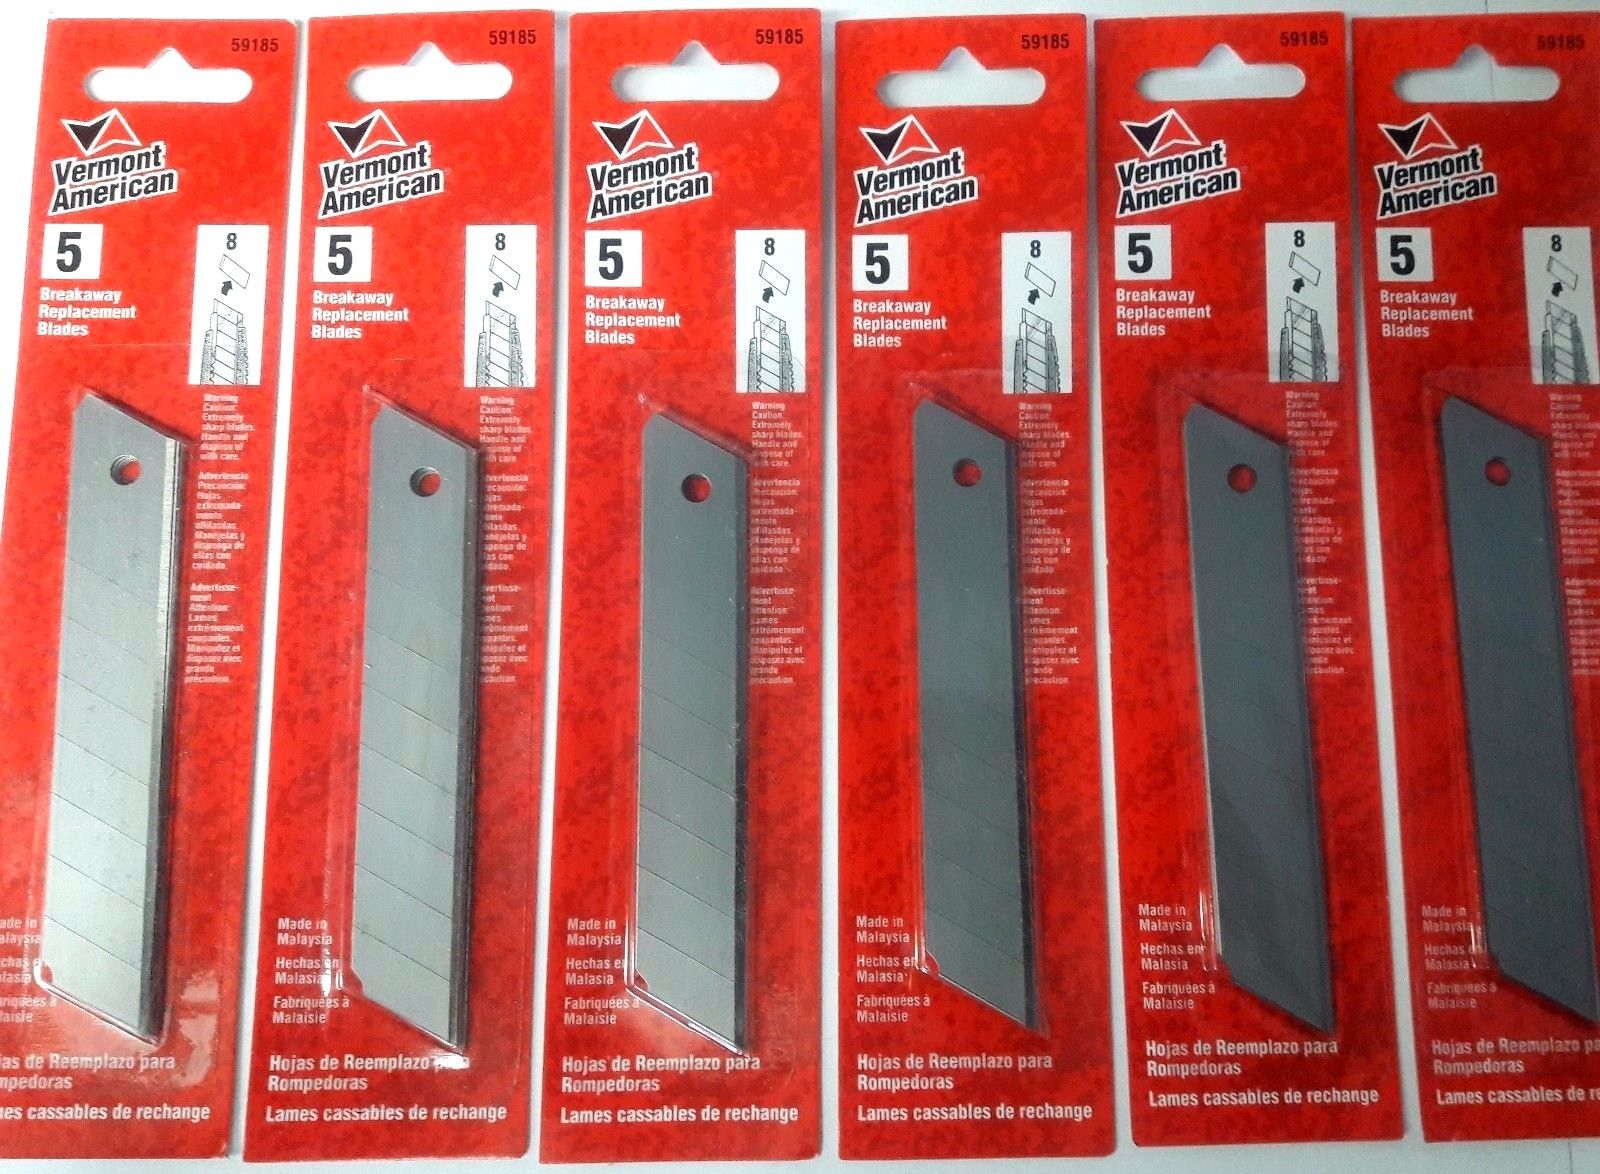 Vermont American 59185 Large Break-Away Blades 6-5 Packs